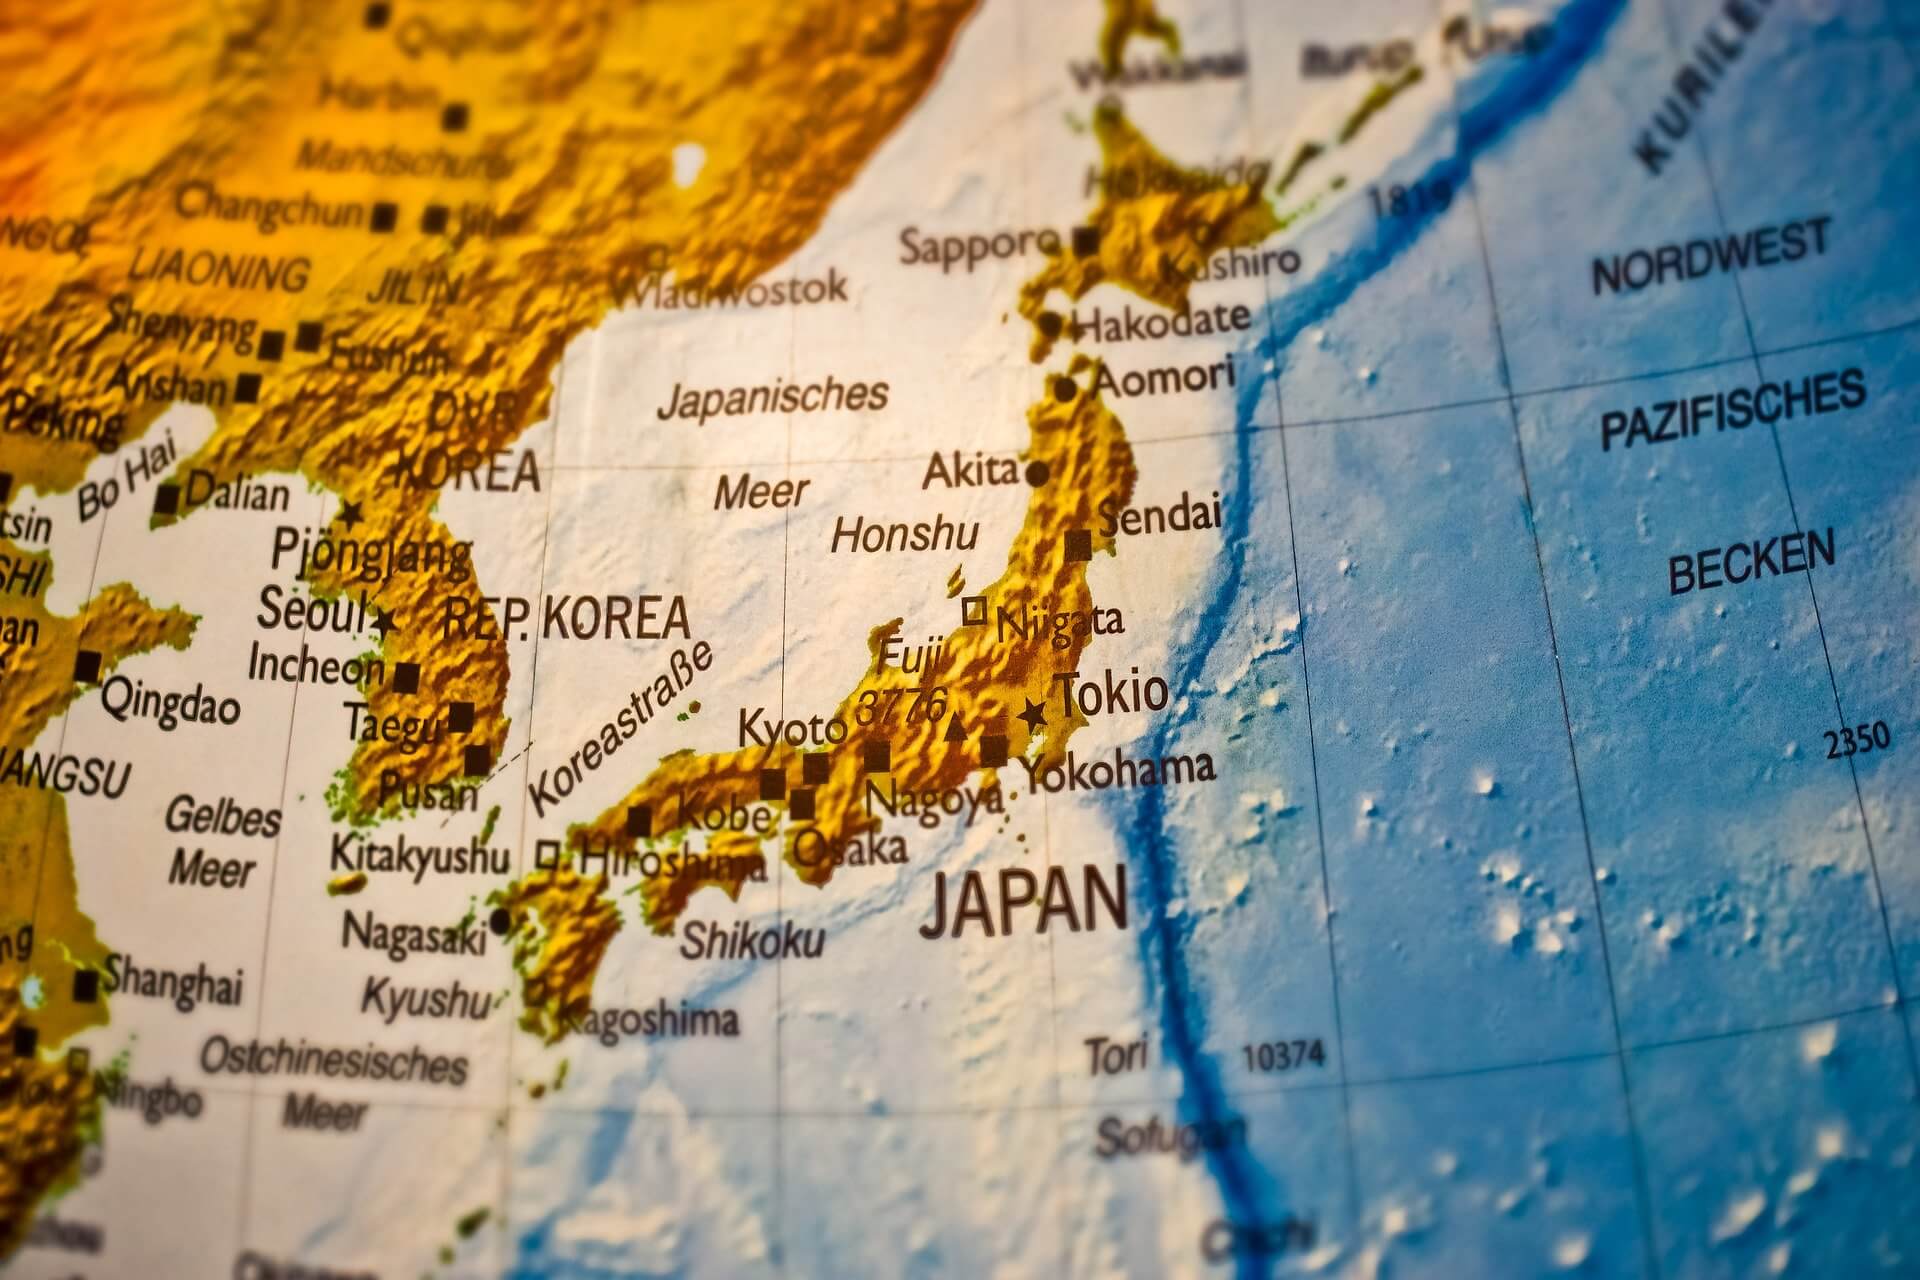 「日本の地方の中小企業」の海外進出が更に加速!? | 『海外進出白書（2019-2020年版）』より